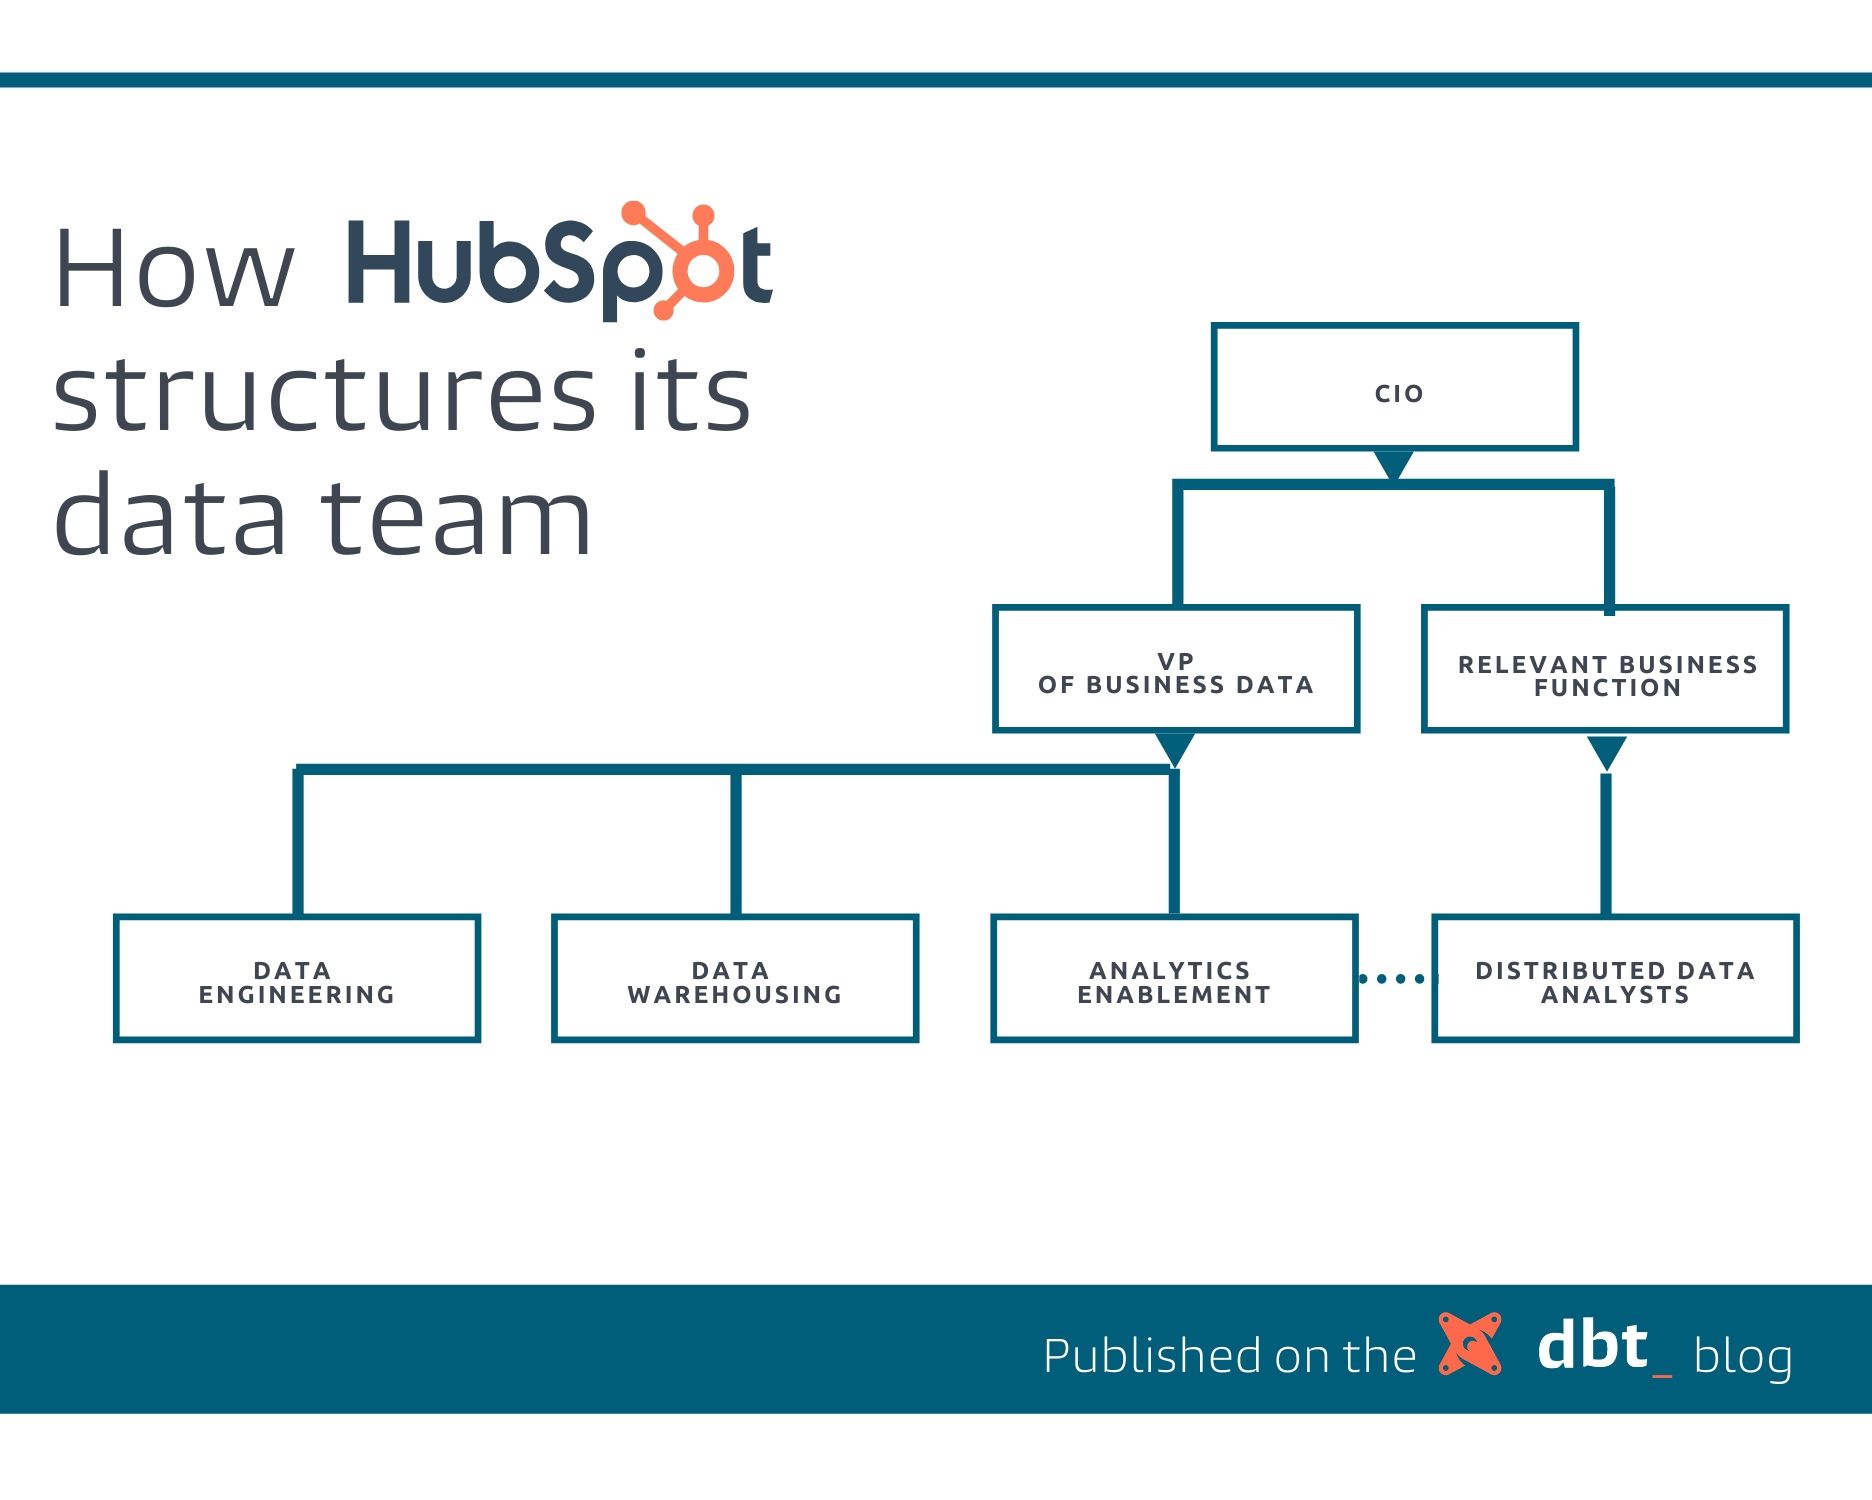 HubSpot's data team org structure